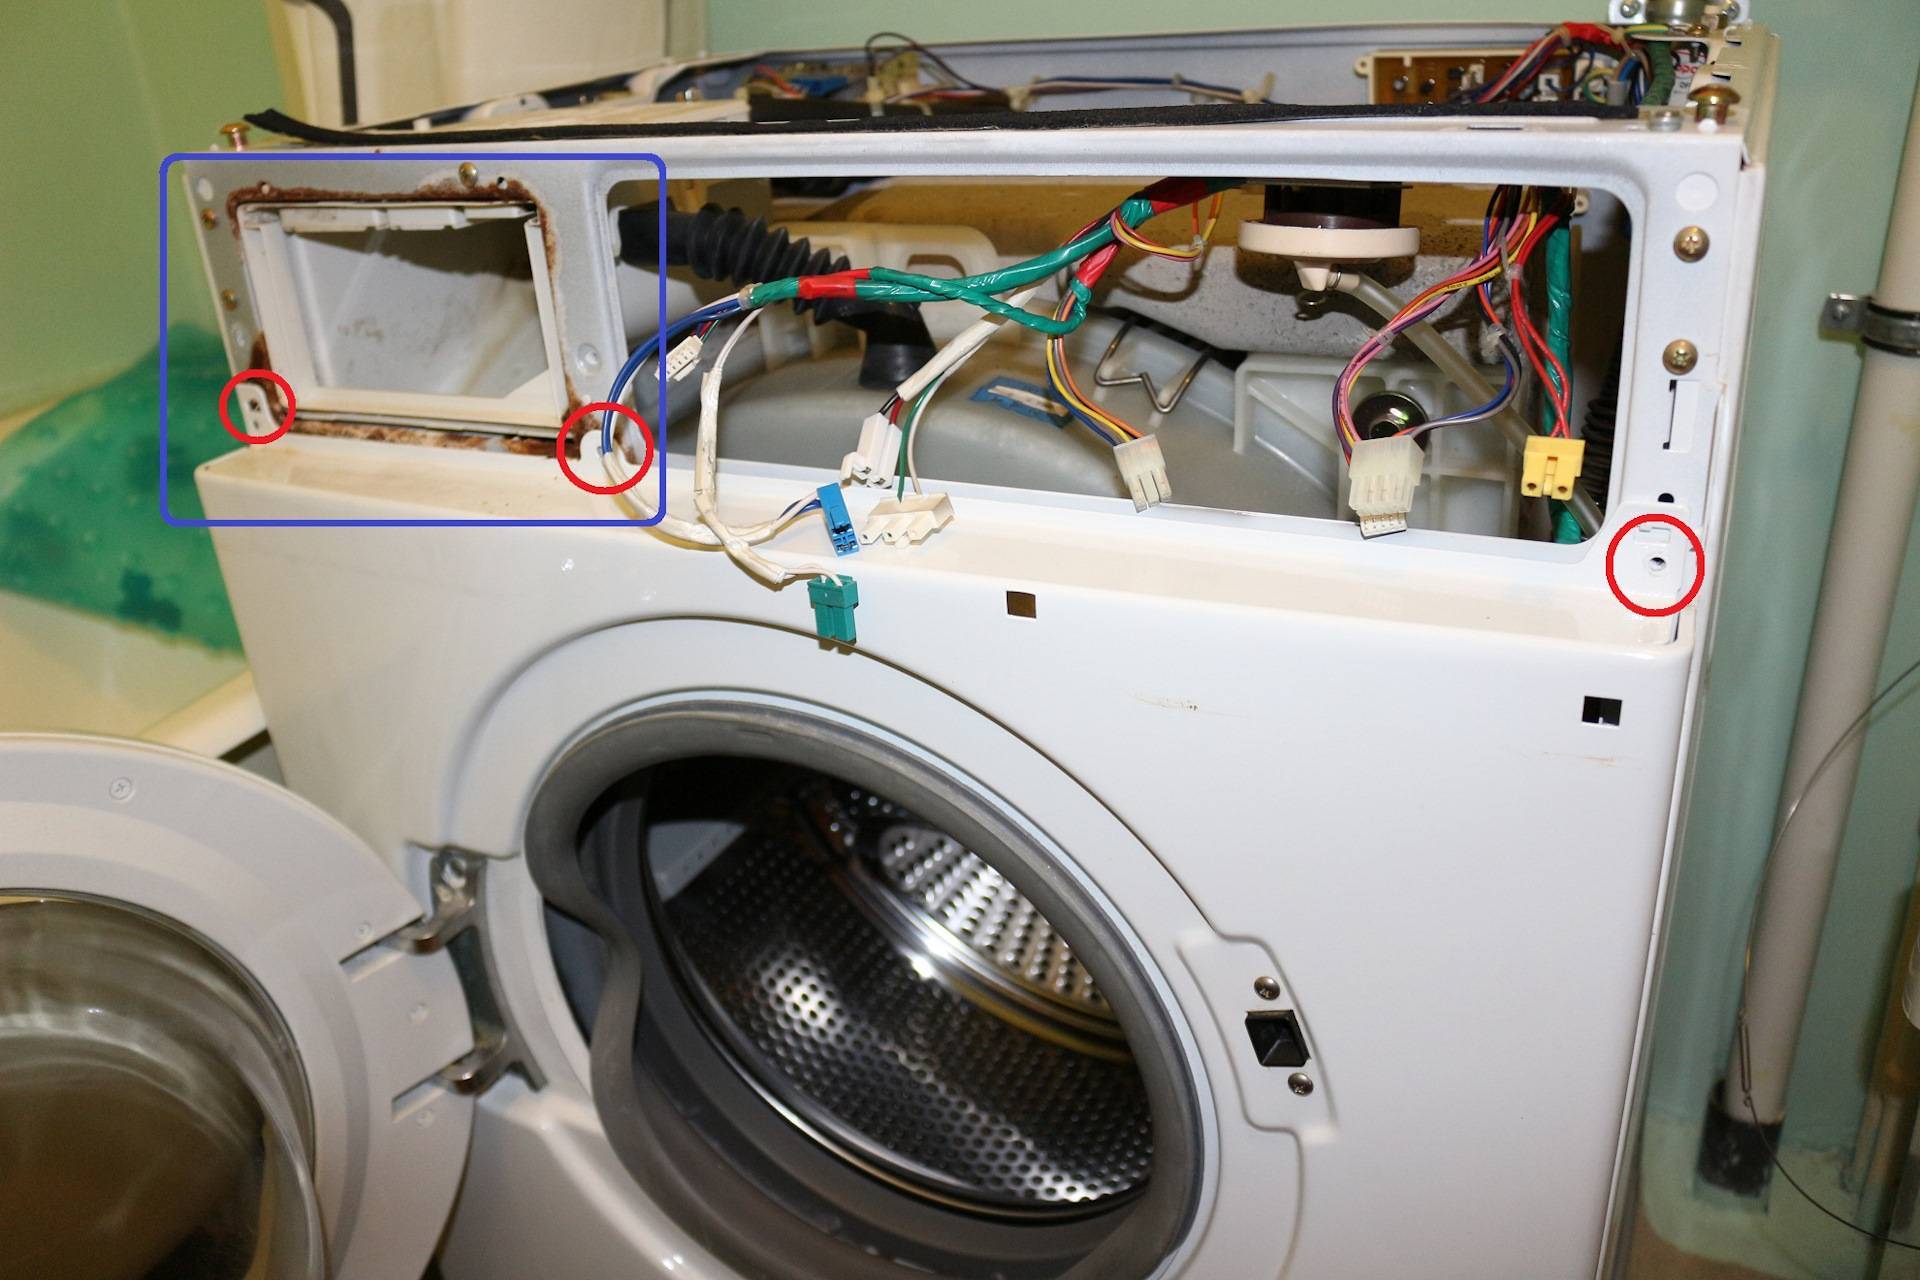 Ремонт стиральной машины lg своими руками: замена подшипника и неисправности